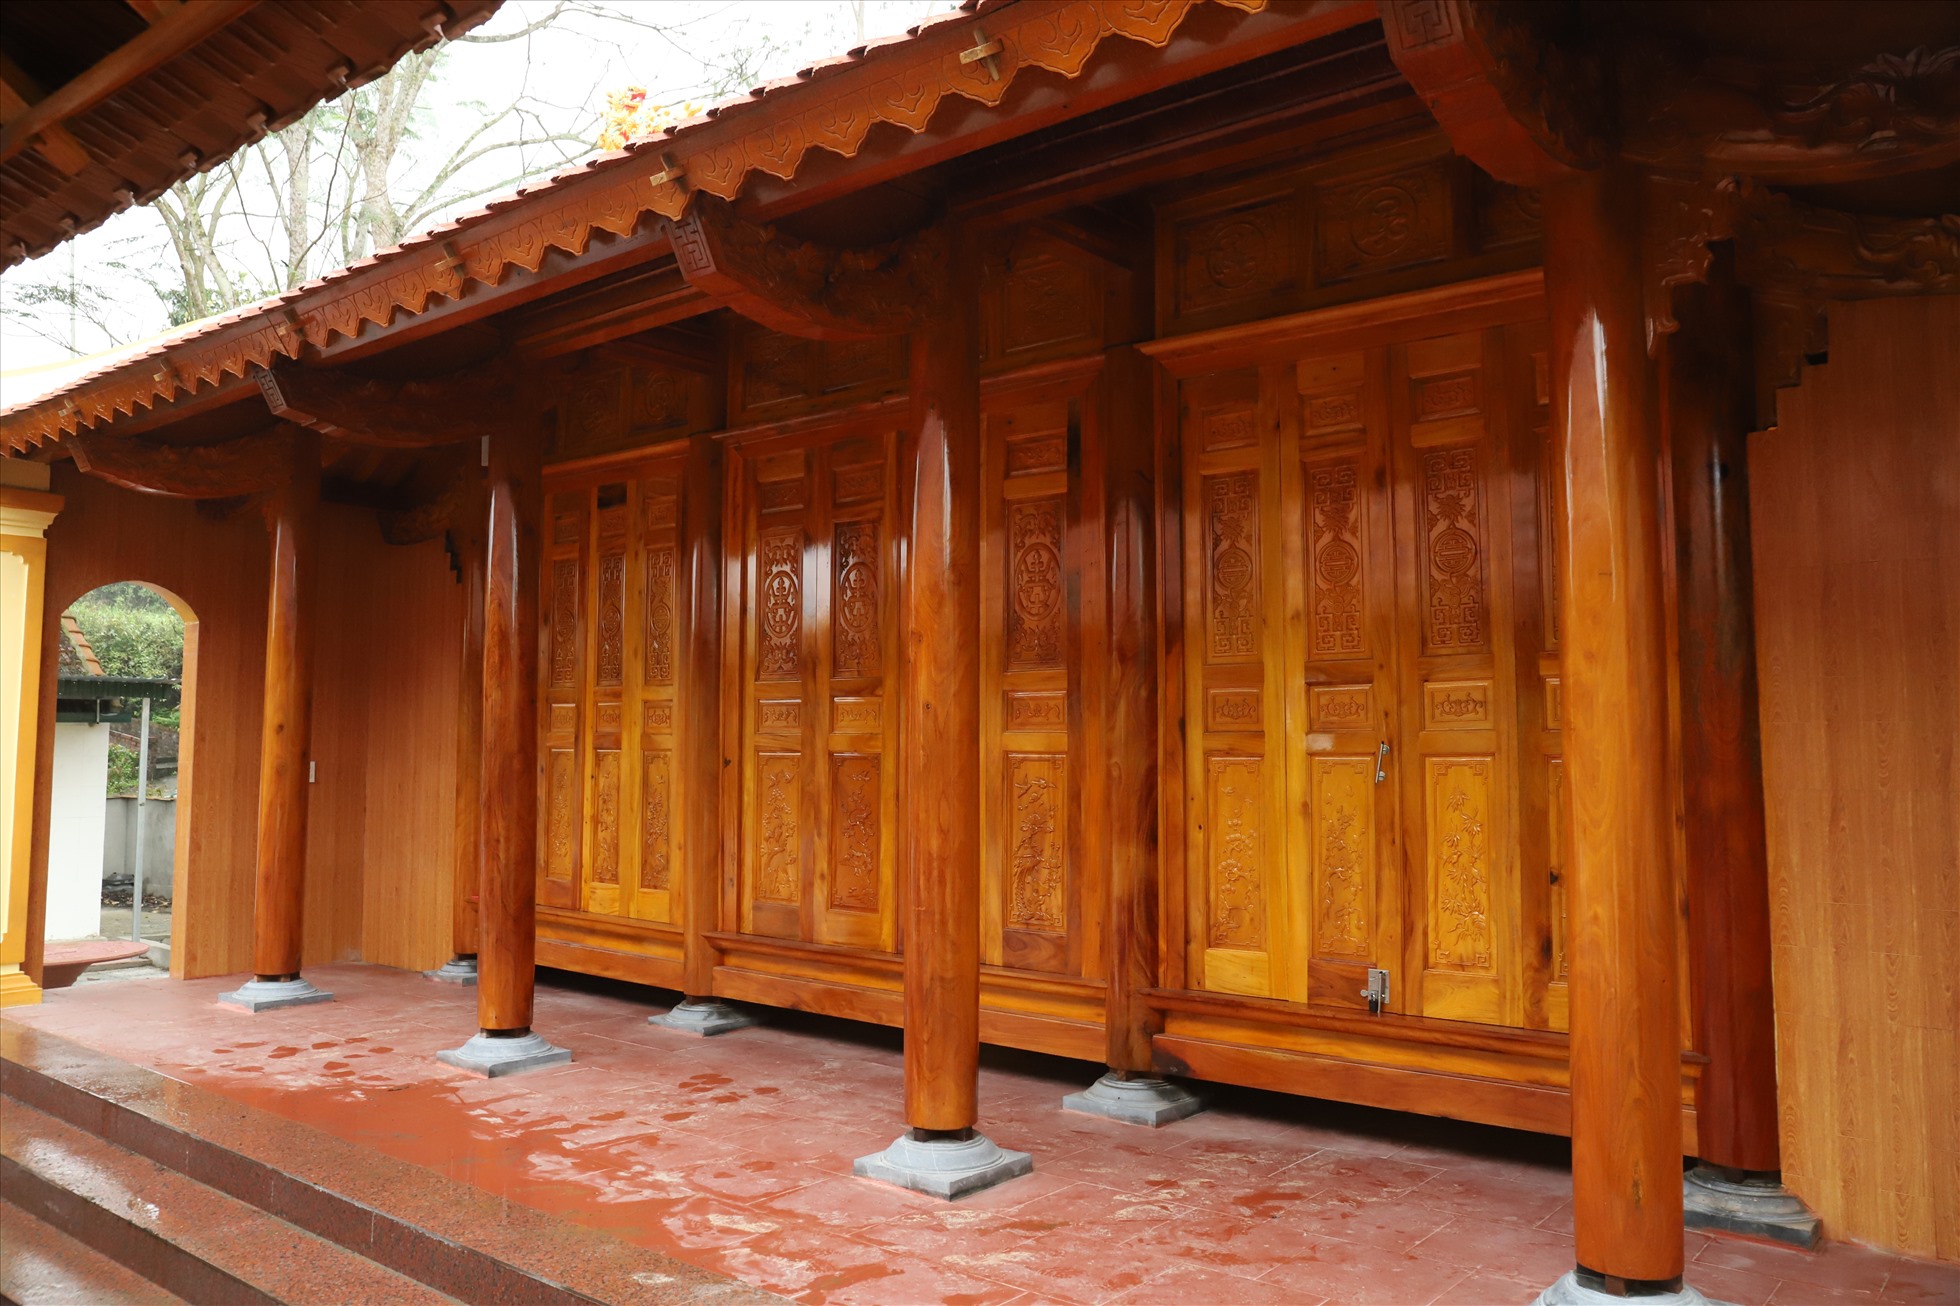 Cơ sở sản xuất đồ gỗ Long Giang nổi tiếng với các sản phẩm nhà thờ. Ảnh: Sỹ Thông